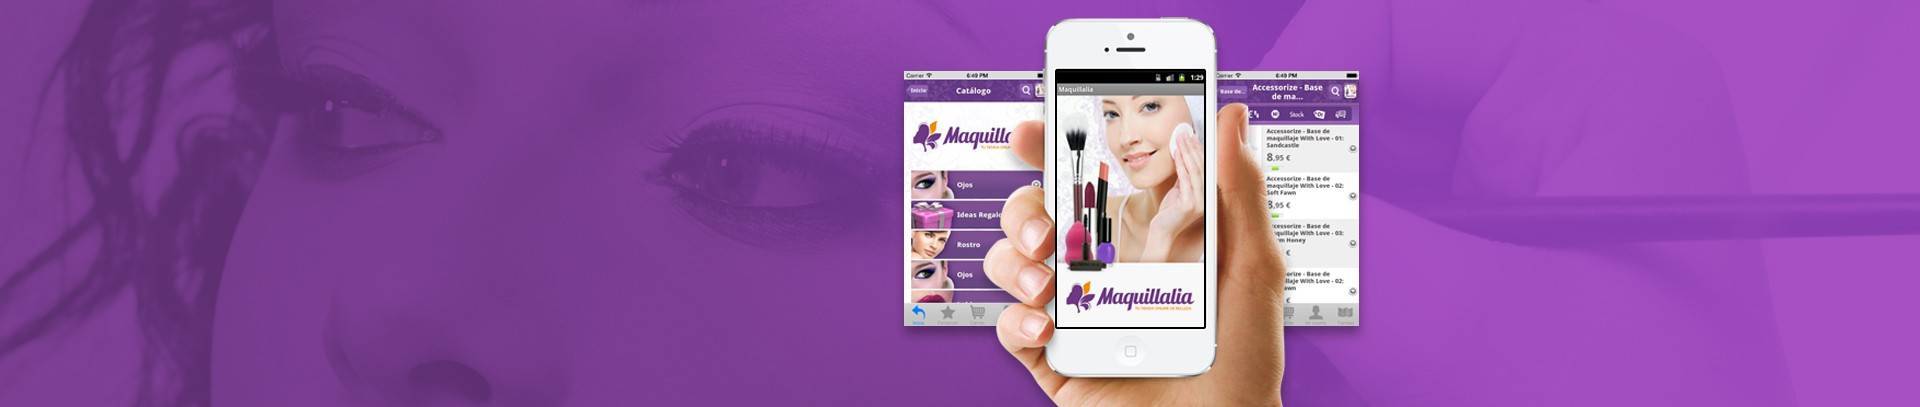 Maquillalia, ¡una app guapa guapa!